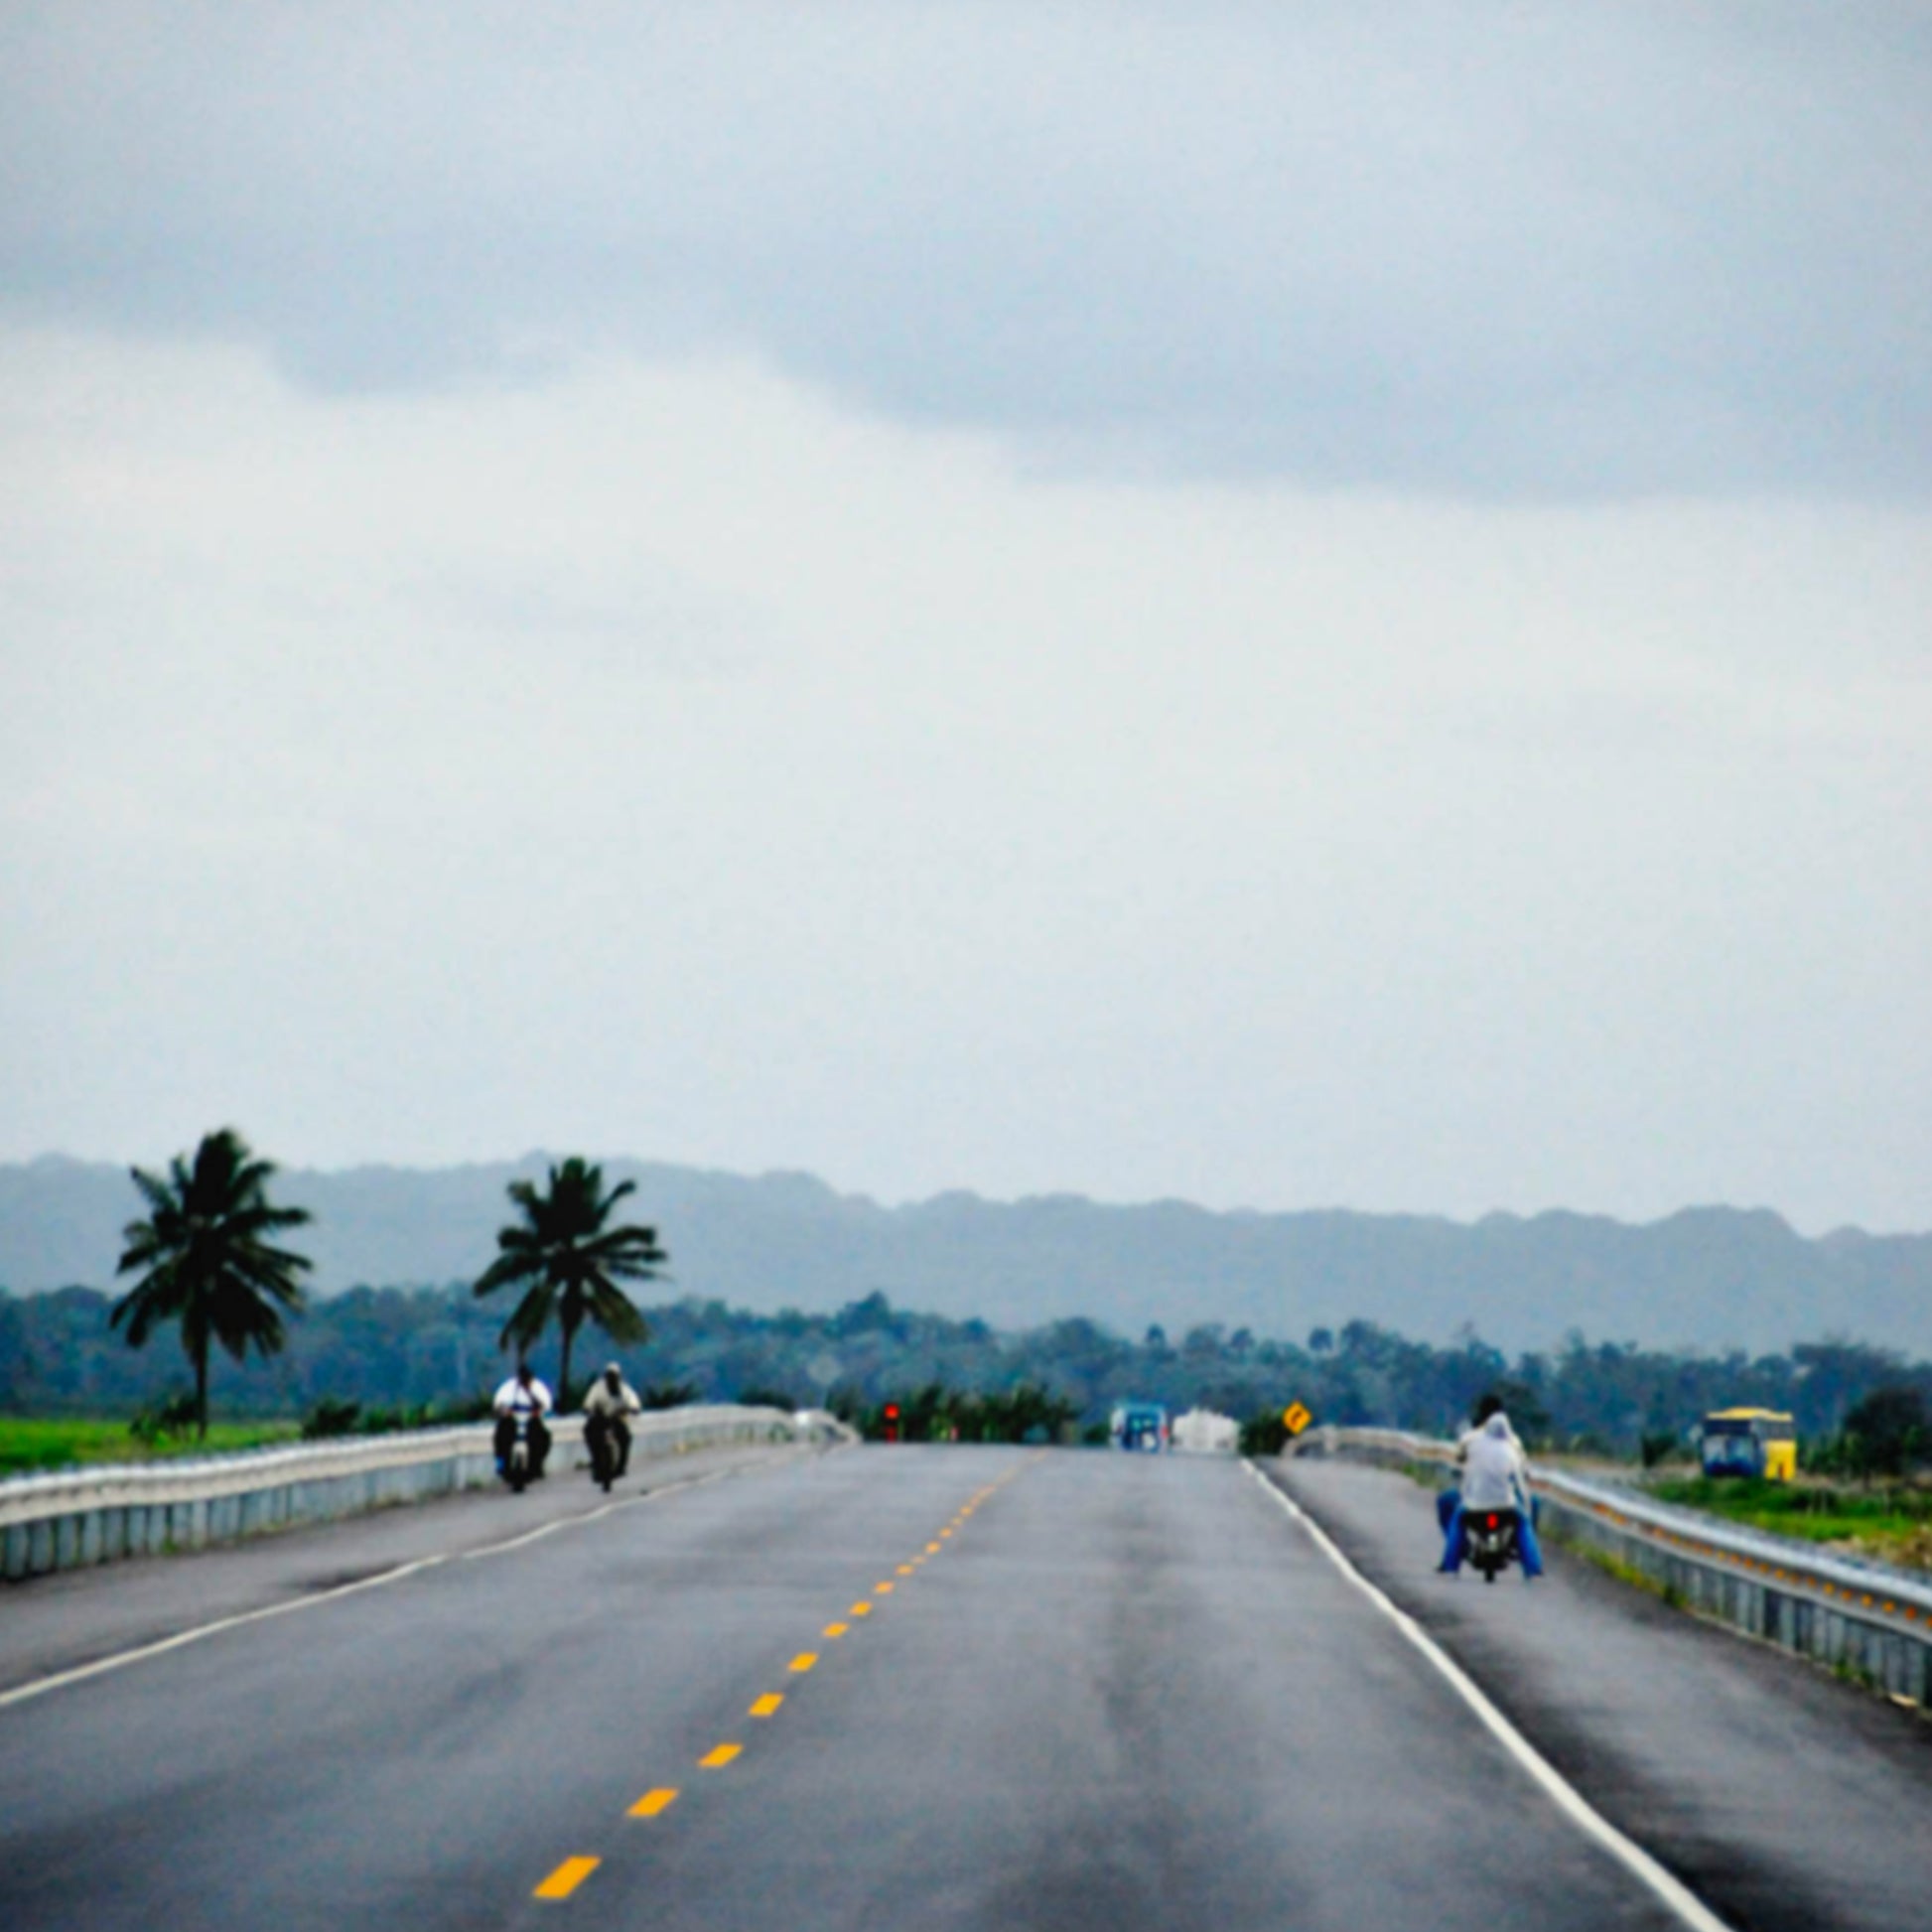 Photograph by César Ancelle-Hansen titled Autoroute, Dominican Republic